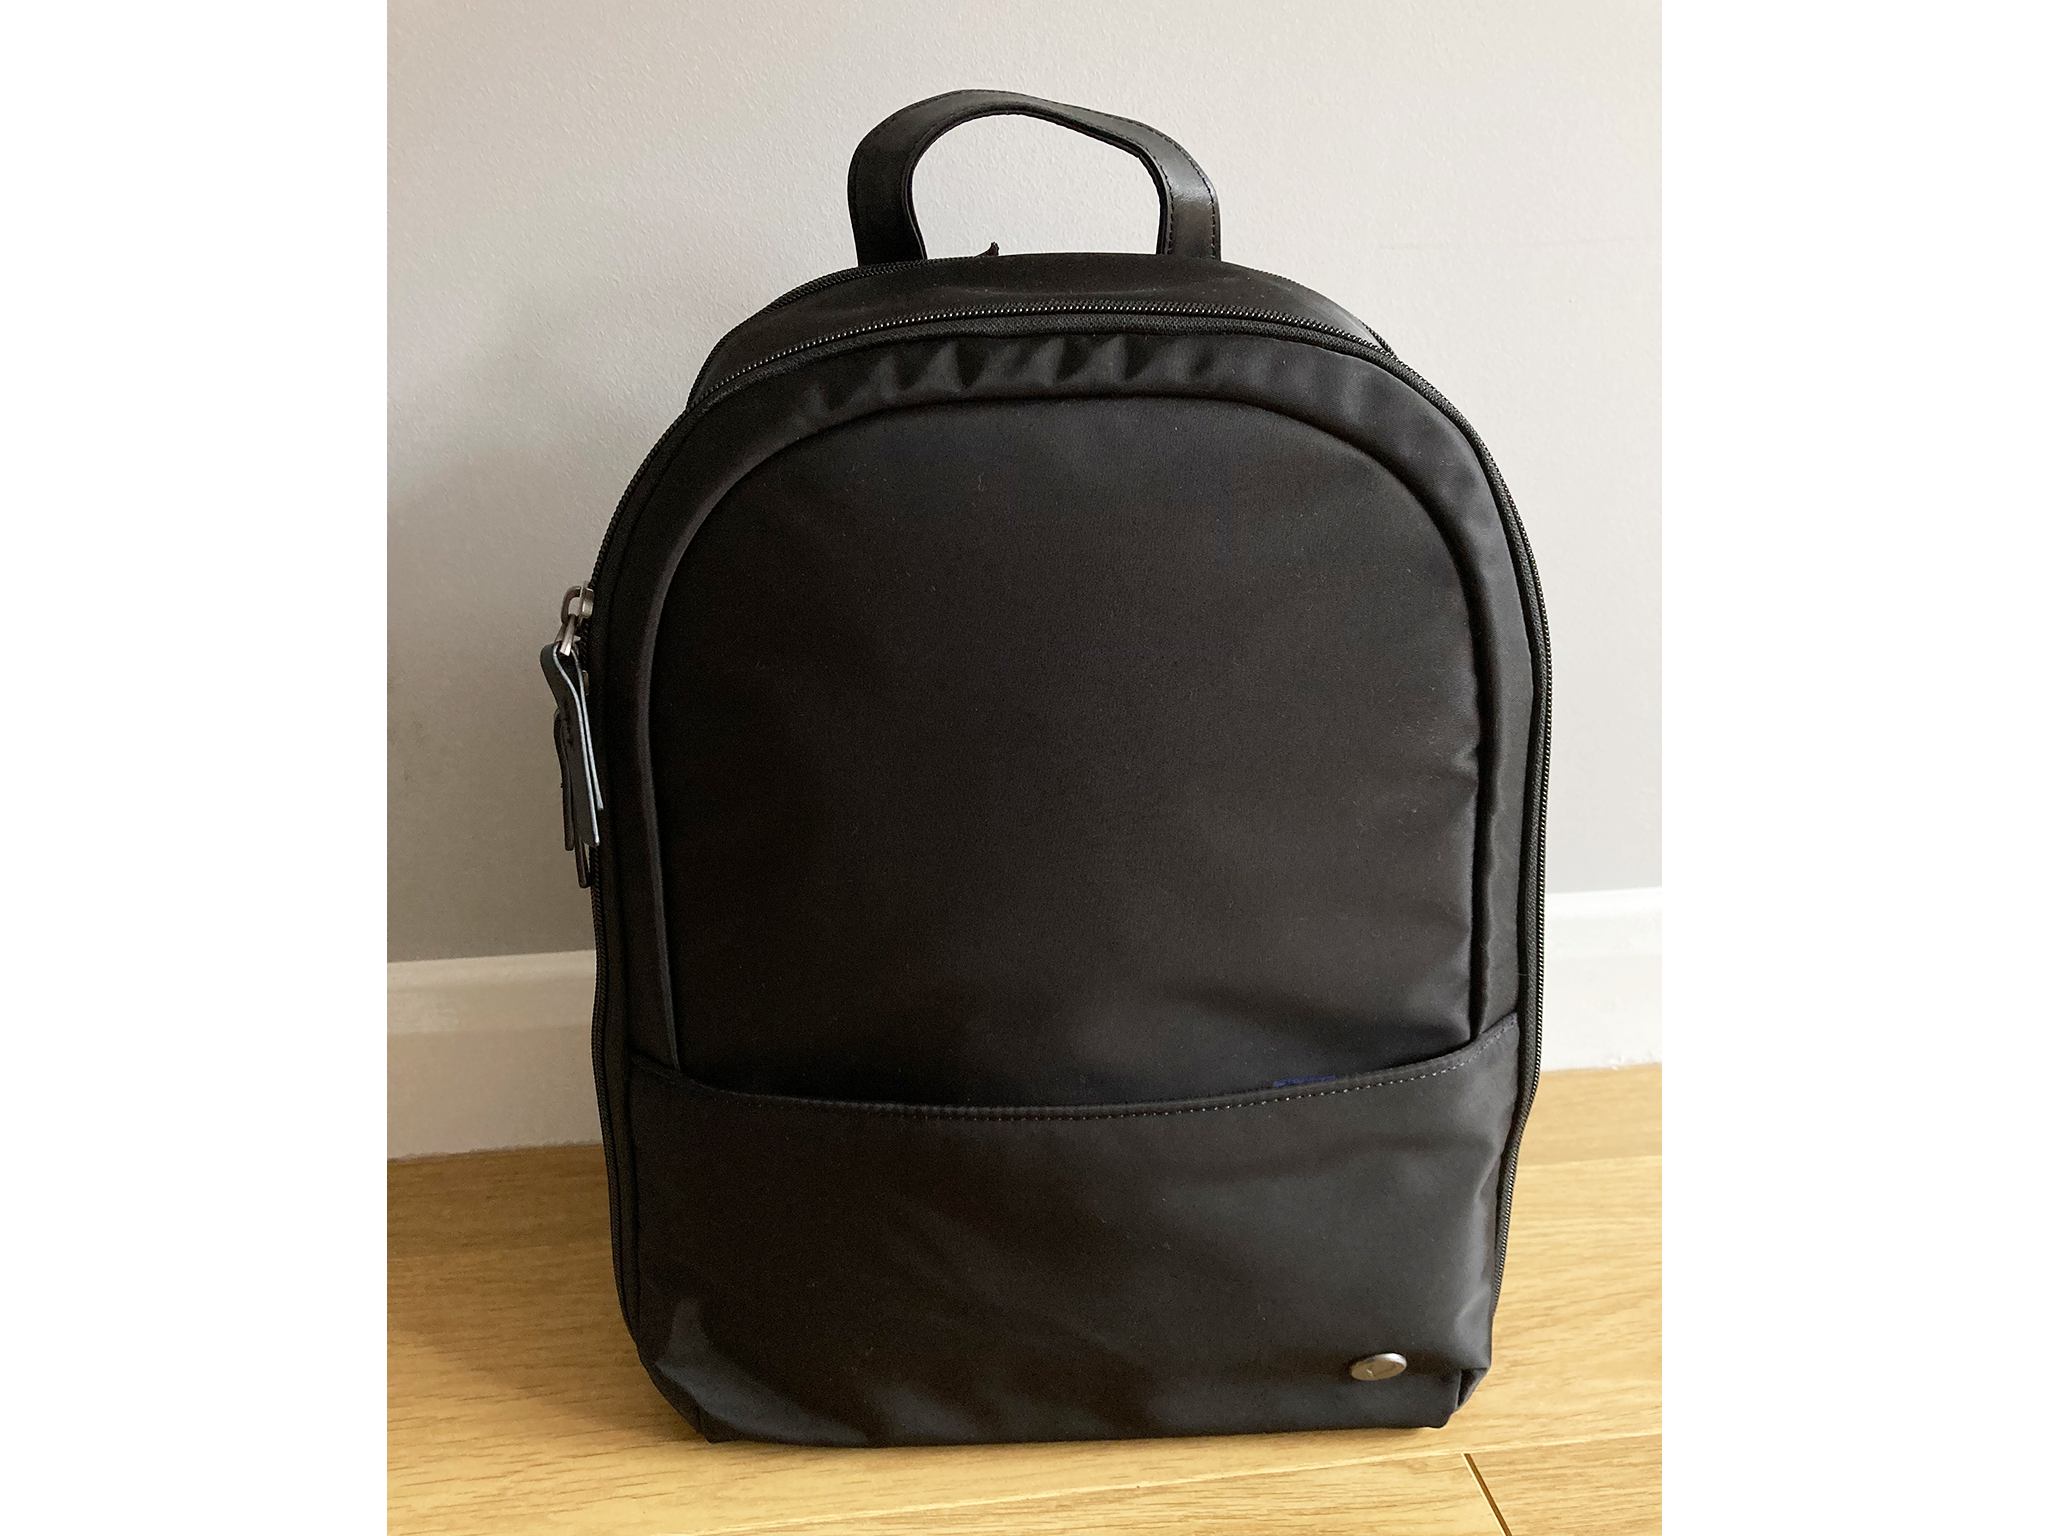 Antler chelsea best laptop bags backpacks